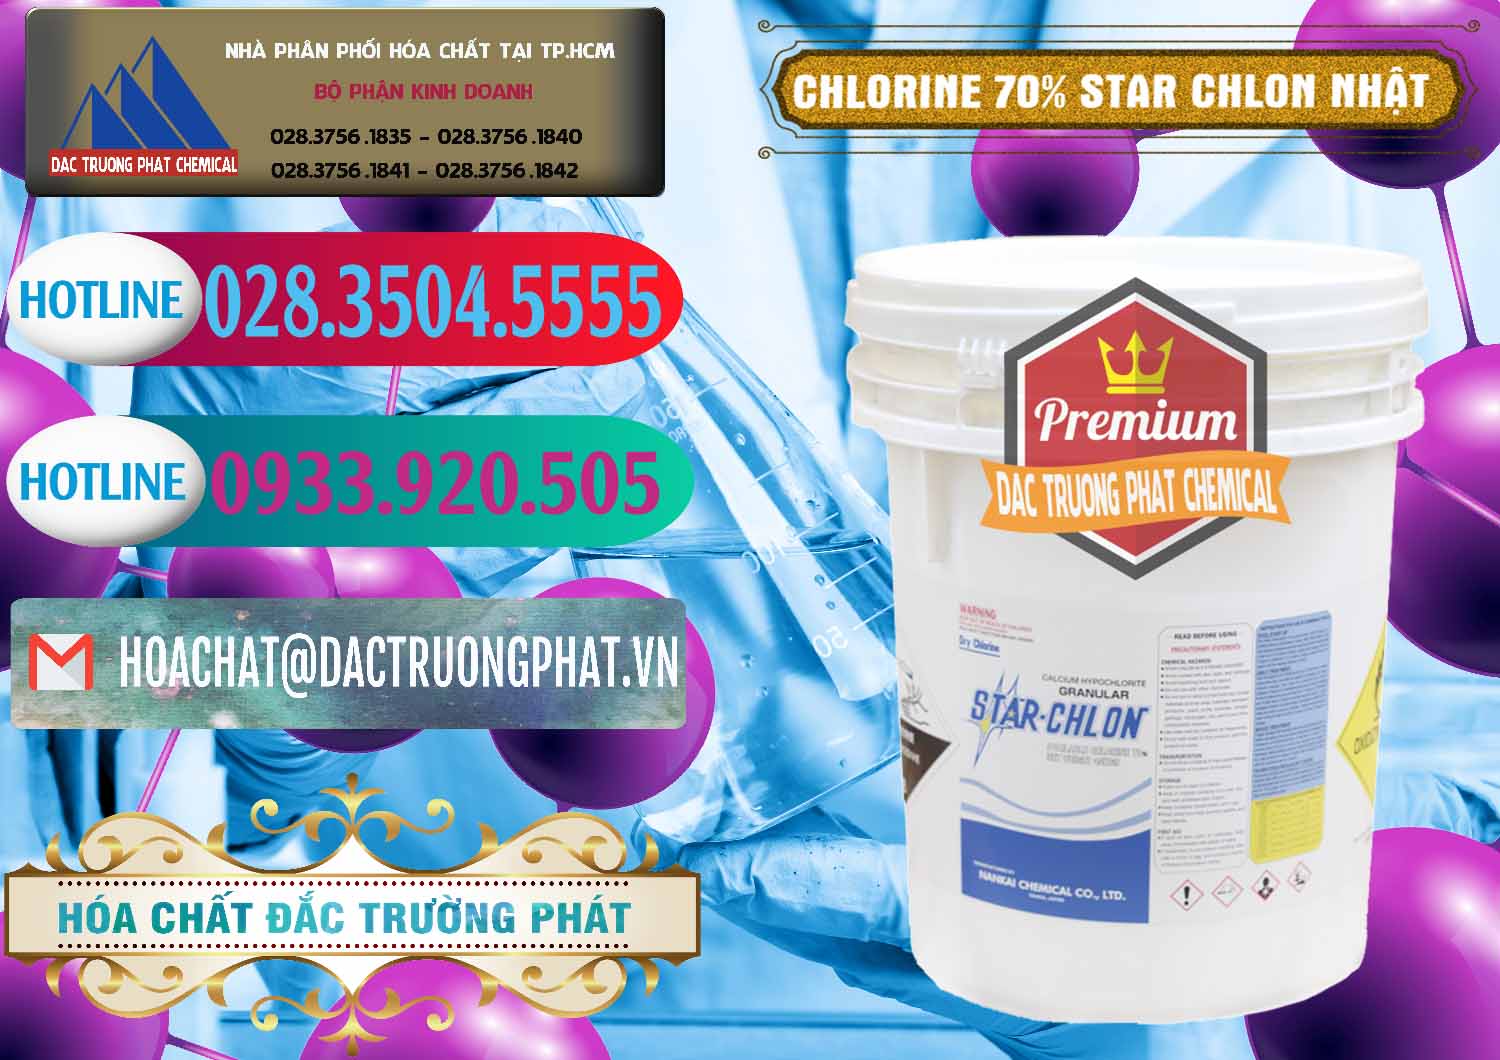 Cty kinh doanh - bán Clorin – Chlorine 70% Star Chlon Nhật Bản Japan - 0243 - Công ty phân phối & cung cấp hóa chất tại TP.HCM - truongphat.vn